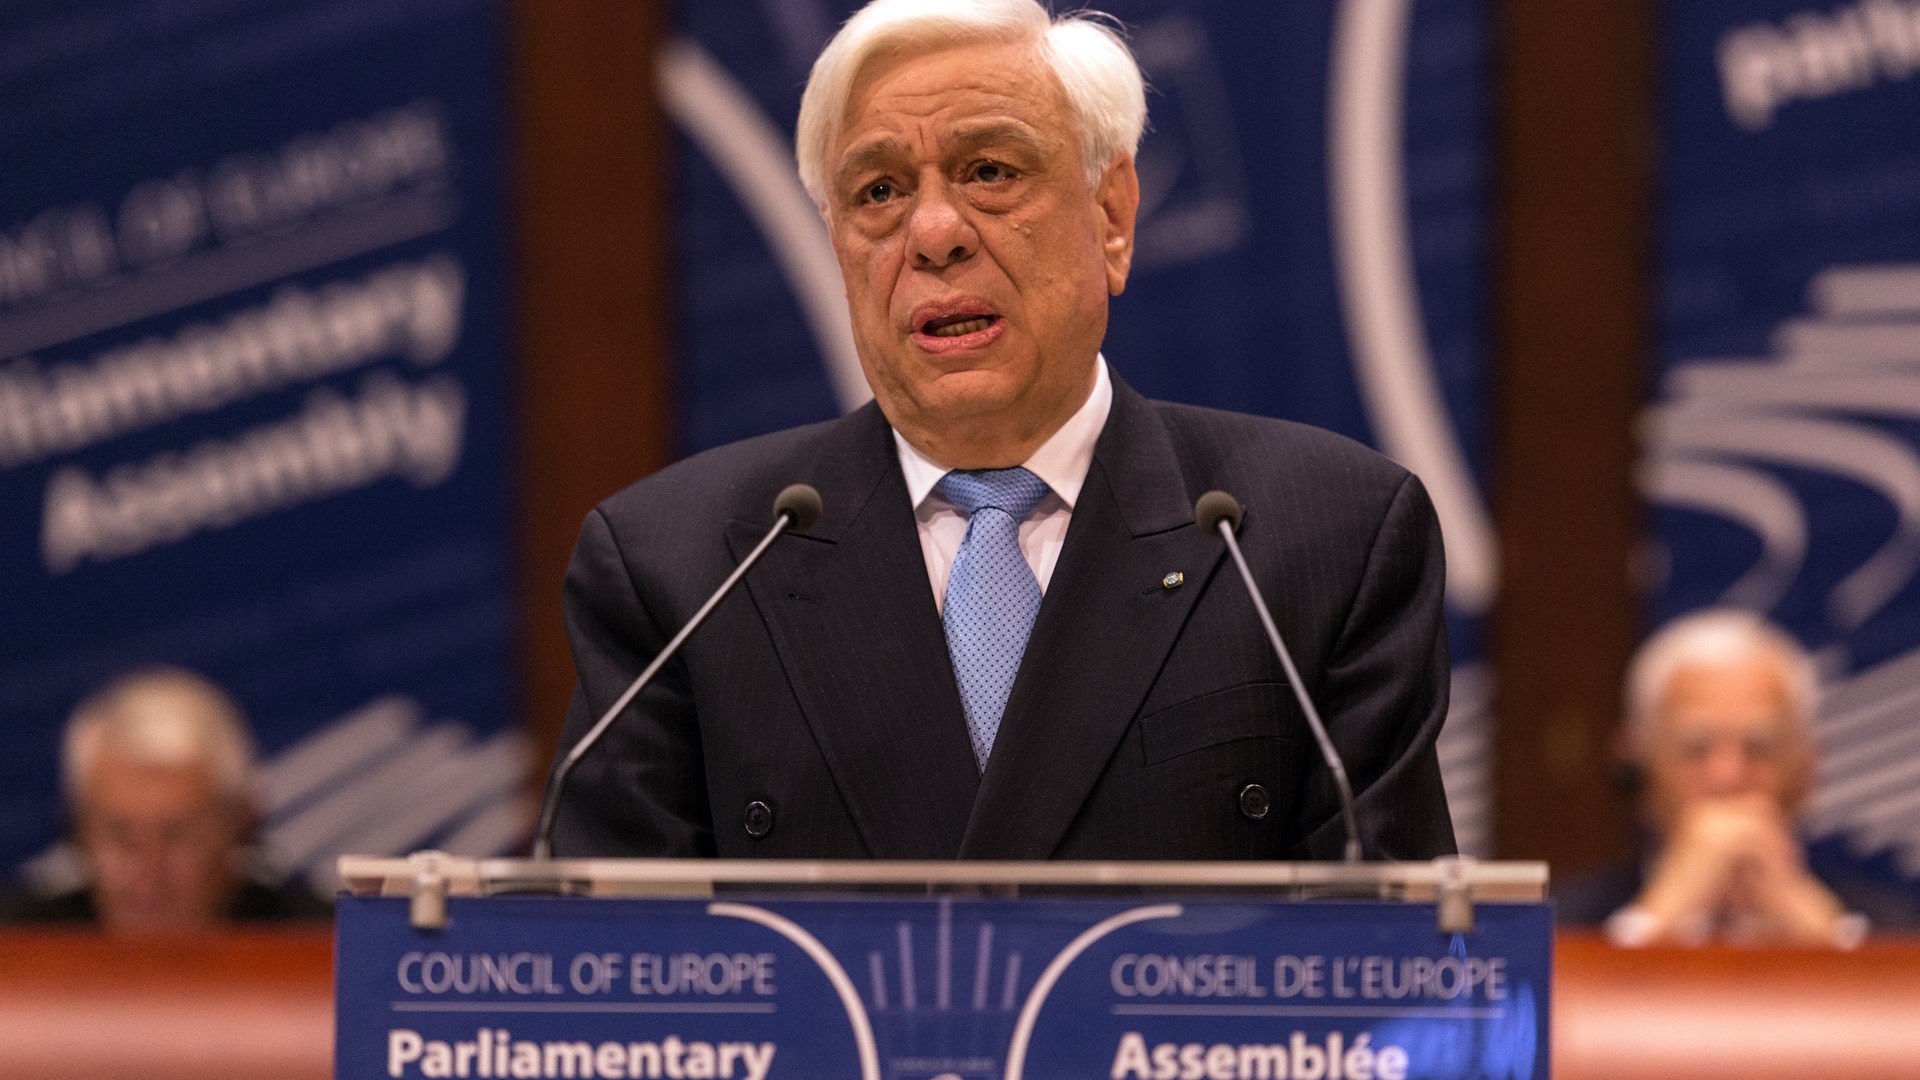 Παυλόπουλος: Η οποιαδήποτε λύση για το Κυπριακό πρέπει να είναι συμβατή με το ευρωπαϊκό δίκαιο